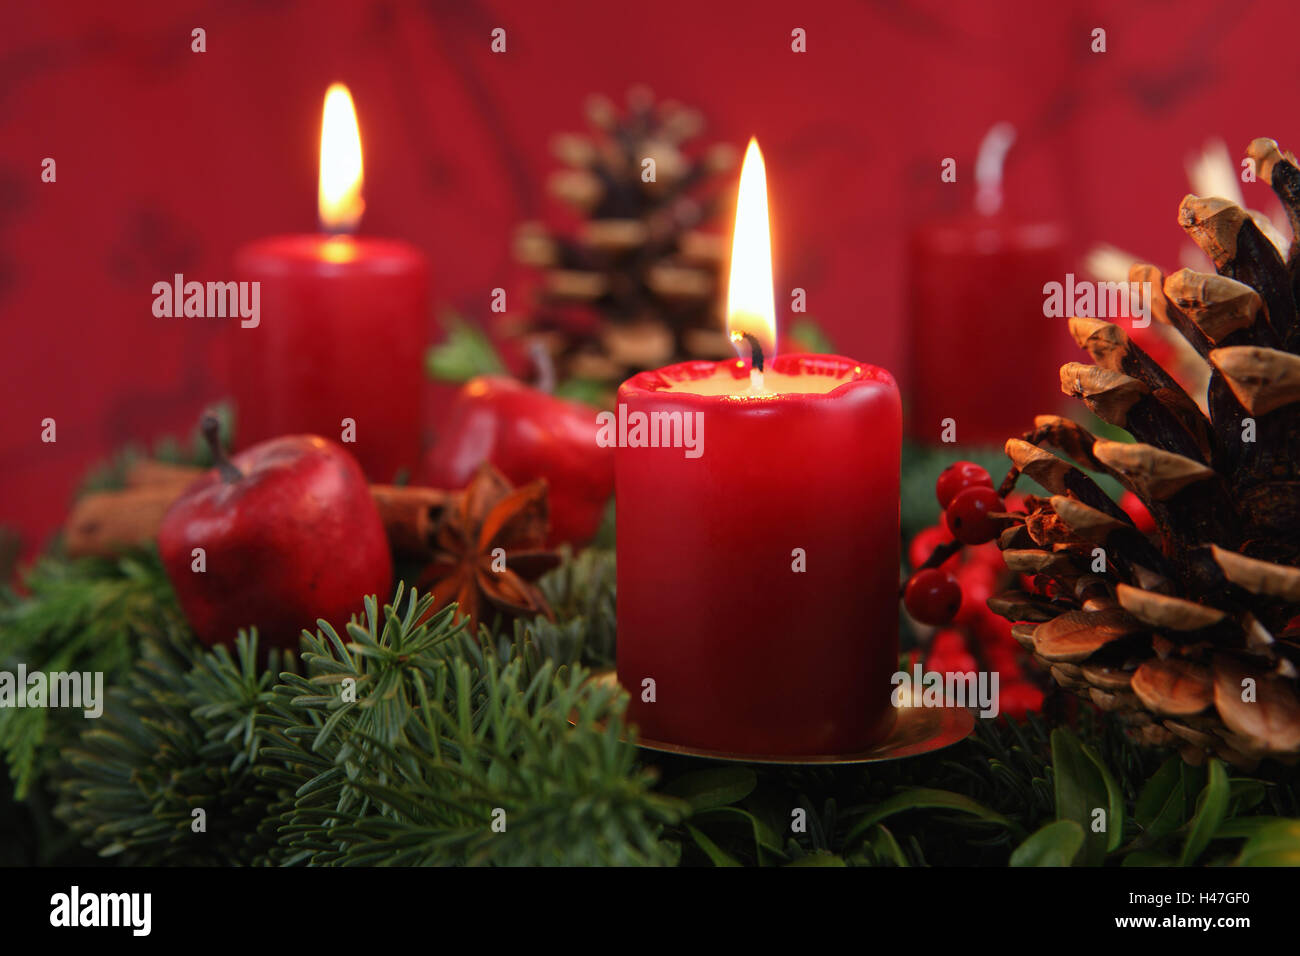 Corona di avvento, due candele accese Foto stock - Alamy